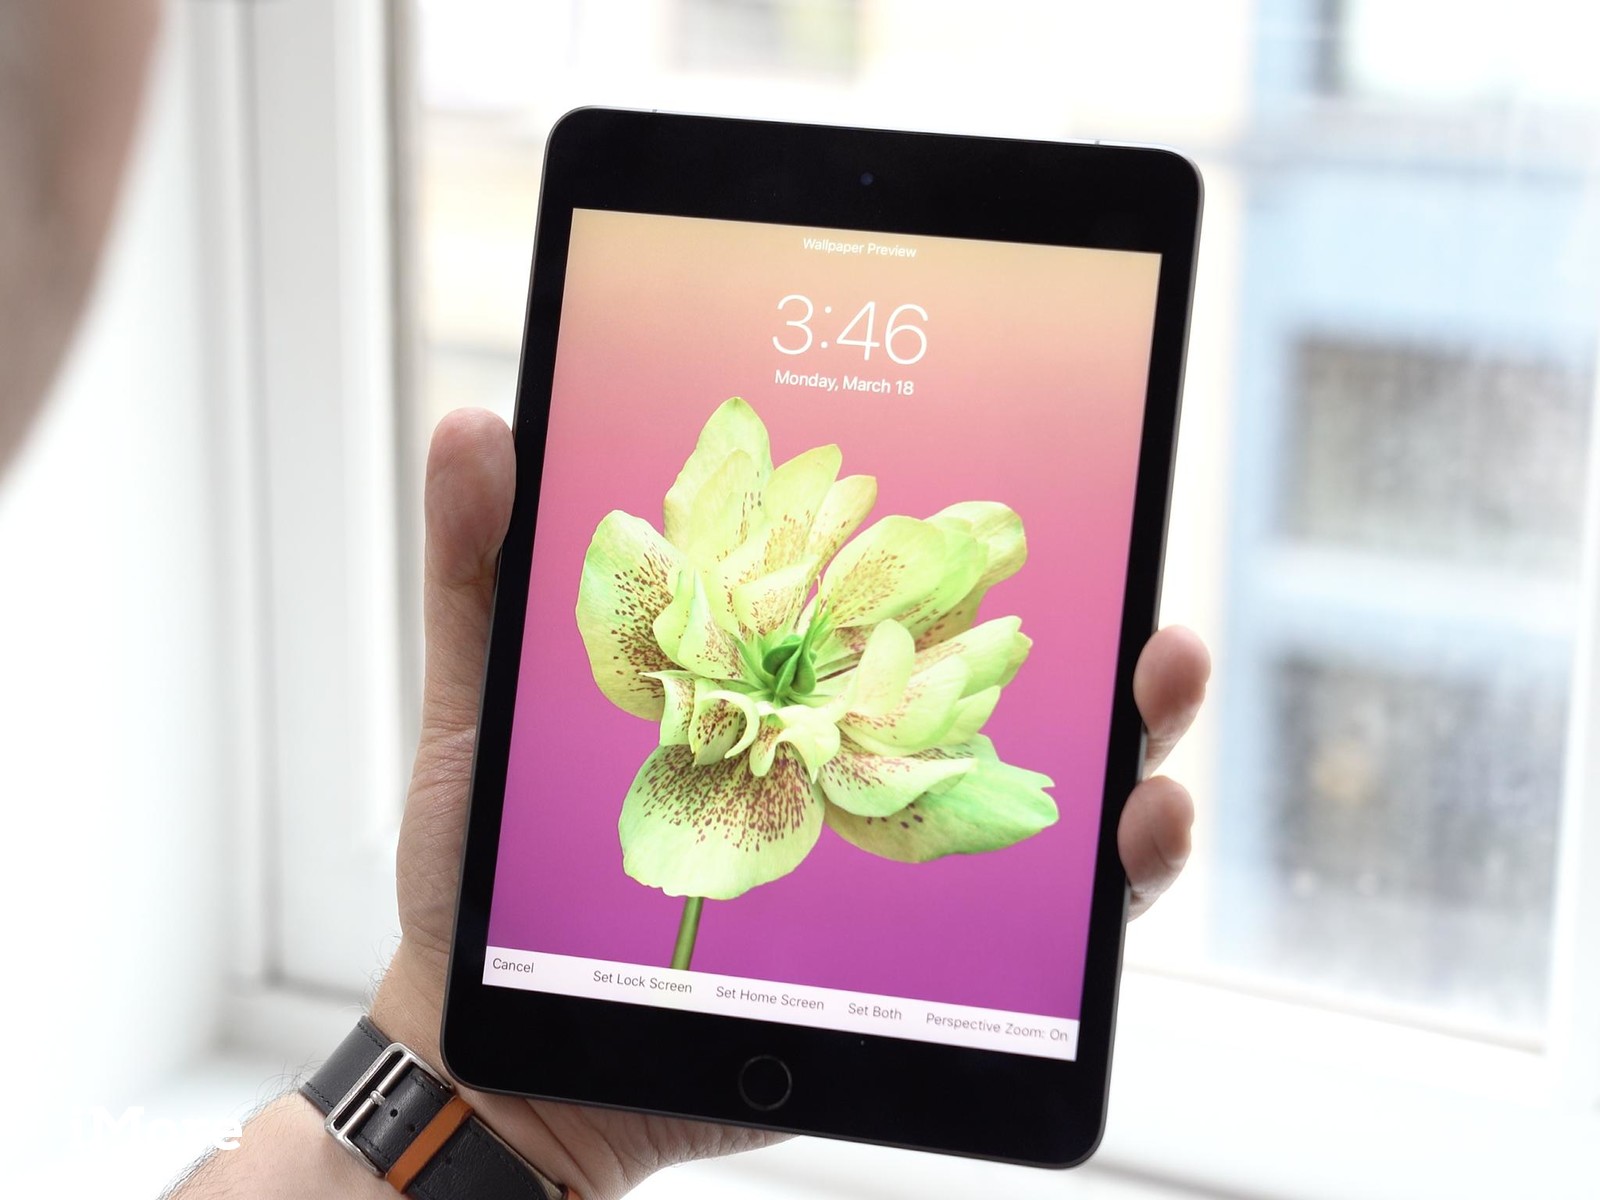 Ipad Mini 5 Flower Wallpaper - Ipad Mini 5 Space Gray , HD Wallpaper & Backgrounds